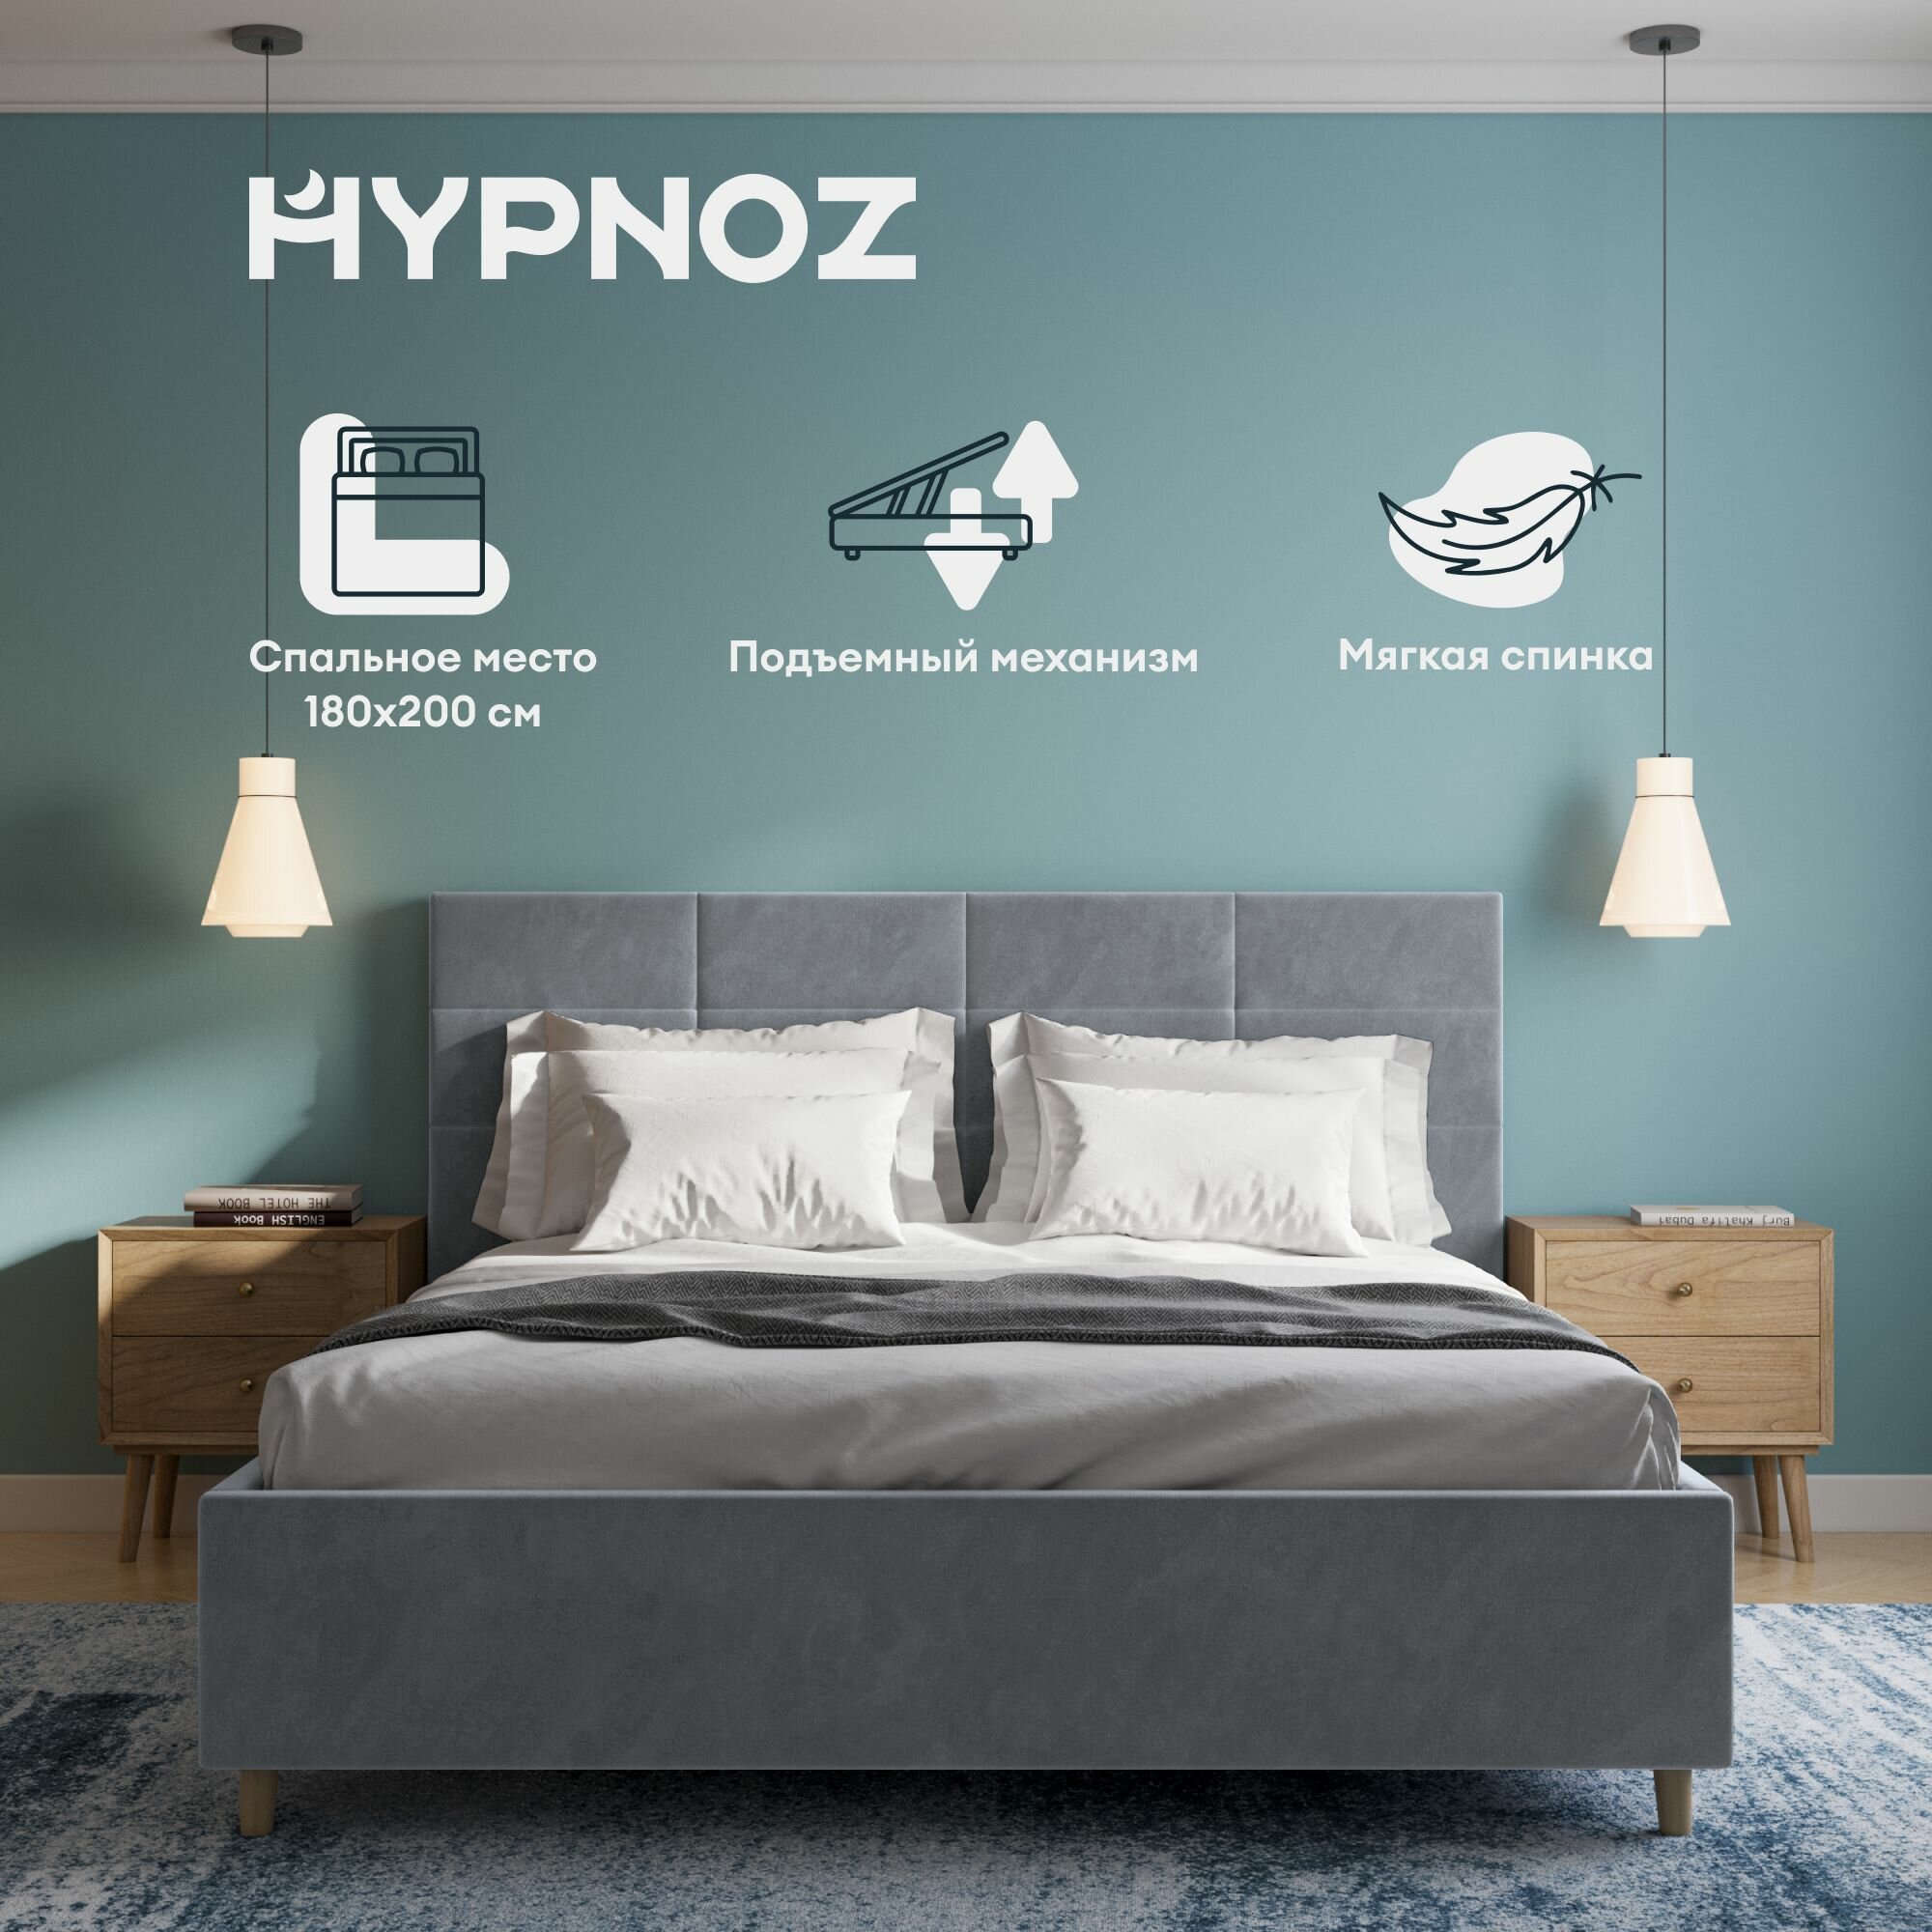 Кровать HYPNOZ Navia 200x180, с подъемным механизмом, Велюр, Светло-серый